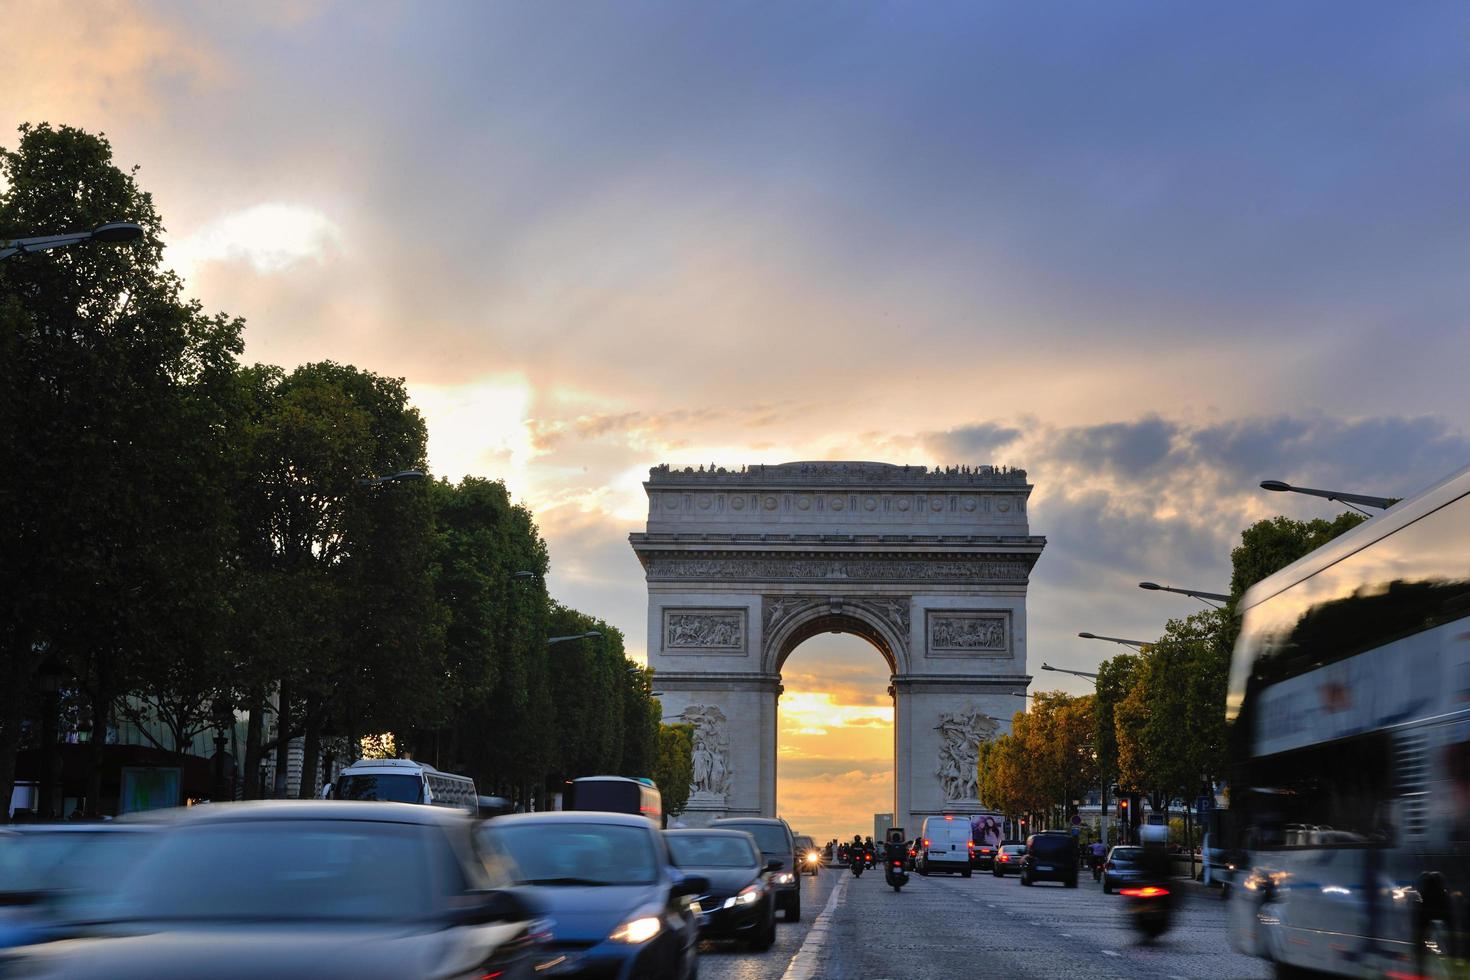 Paris, France, 2022 - Arc de Triomphe, Paris,  France photo